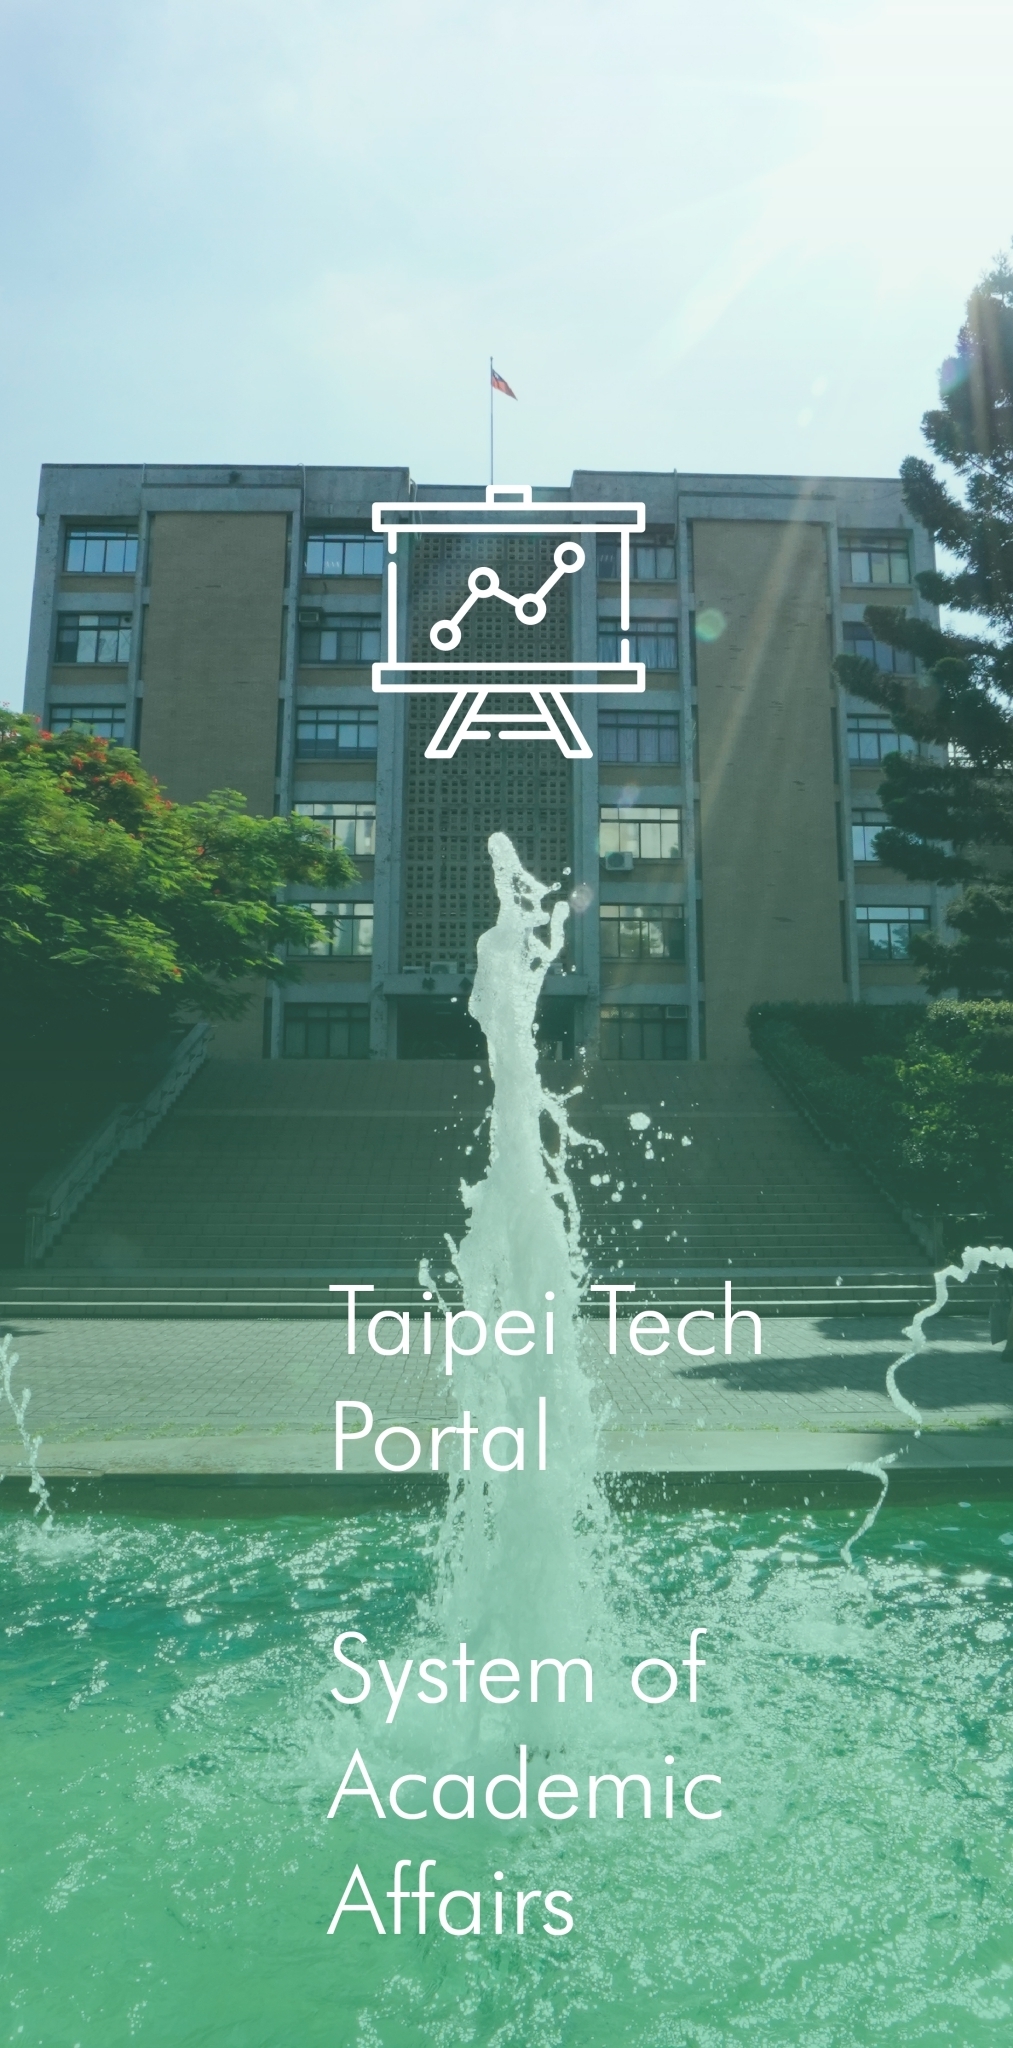 Taipei Tech Portal System of Academic Affairs